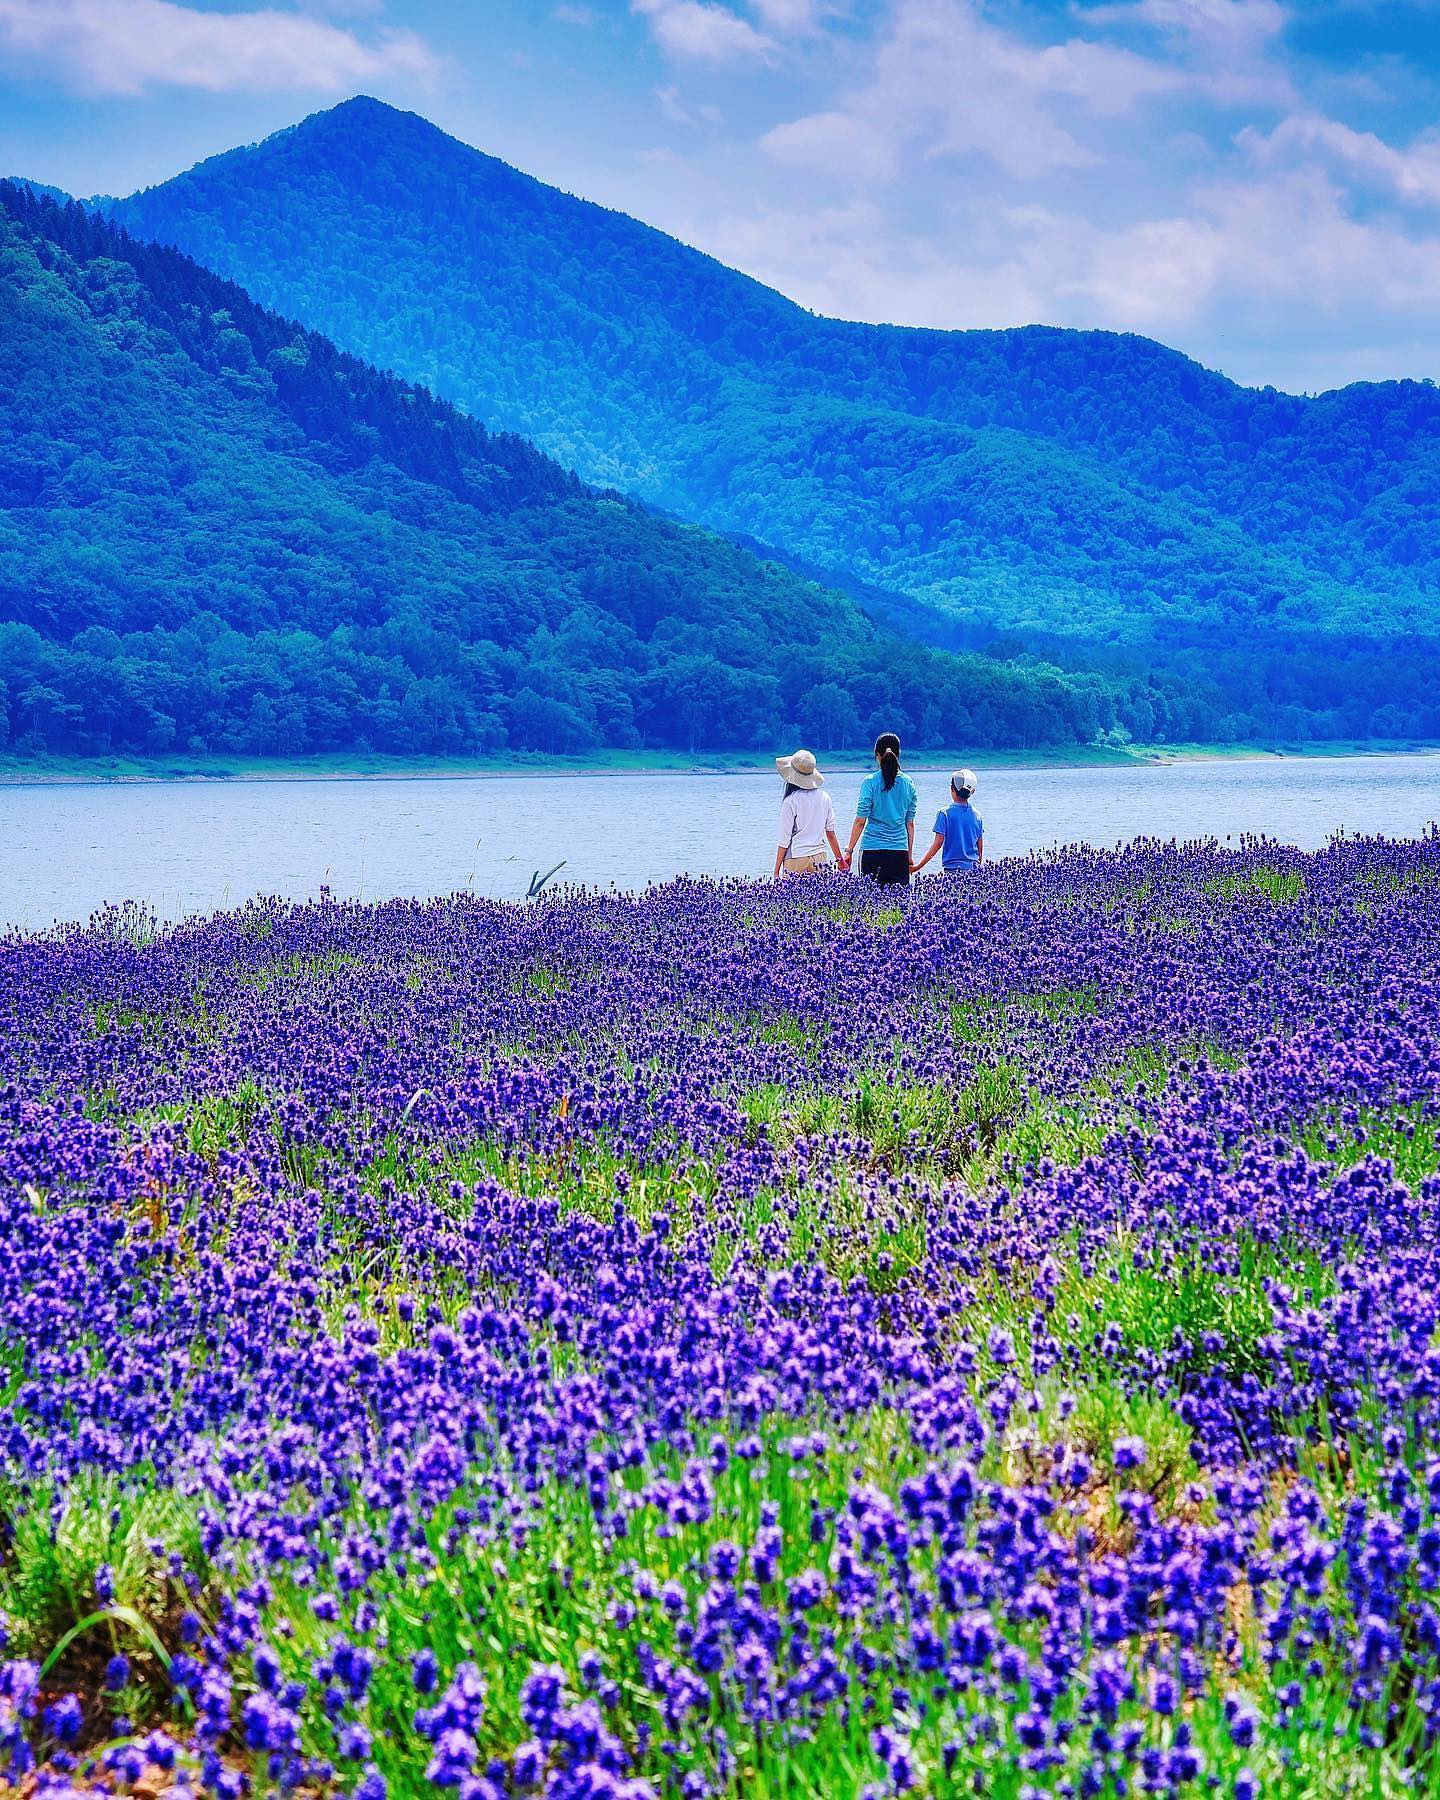 🇯🇵【北海道Hokkaido】金山湖
🌸湛藍湖畔+紫色薰衣草花田的夢幻景緻
⛰️位於南富良野的金山湖“かなやま湖”從富良野約一小時車程。1967年金山壩建立後形成了約九平方公里的金山湖，是日本第八大的水壩湖泊，也是當地人著名的戶外活動與露營天堂
❤️每年夏季的金山湖畔會邊種滿了大片的薰衣草，湛藍的湖面映照著綠色群山的倒影，搭配上紫色花田作為前景是非常特別的迷人景色。

#japan #hokkaido #北海道 #富良野 #金山湖 #金山湖ラベンダー畑 #かなやま湖 #薰衣草 #湖畔薰衣草 #把世界當教室🌍 #牽手照系列👫 #travelwithmikeanna